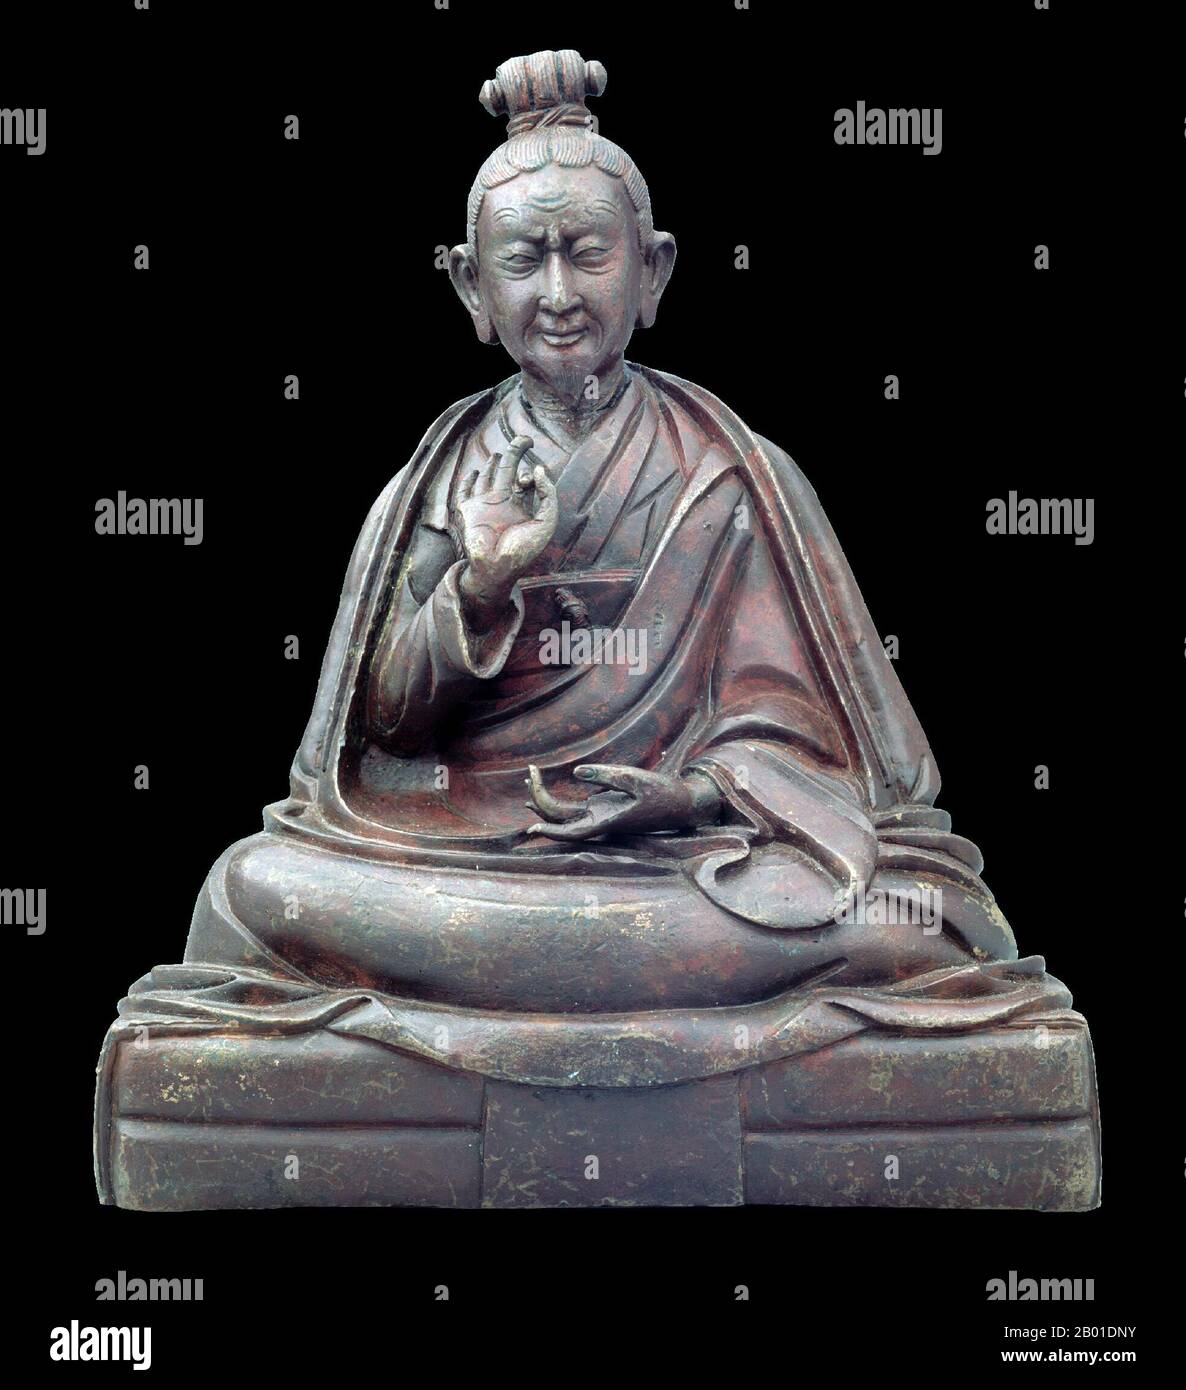 China/Tibet: Jigme Lingpa (1729-1798), buddhistischer Salbei und Entdecker alter Texte. Bronzestatuette, c, 1798. Jigme Lingpa war der Promulgator des Longchen Nyingthik, der Heart Essence Lehre von Longchenpa, von dem er traditionell eine Vision erhielt, in der die Lehren enthüllt wurden. Der Longchen Nyingthik wurde schließlich zum berühmtesten und am weitesten verbreiteten Zyklus der Dzogchen-Lehren. Namkha'i und Shane (1999) bestätigen, dass Jigme Lingpa auch eine Abhandlung über die spirituelle und medizinische Verwendung von Kristallen und Edelsteinen von grundlegender Bedeutung geschrieben hat. Stockfoto